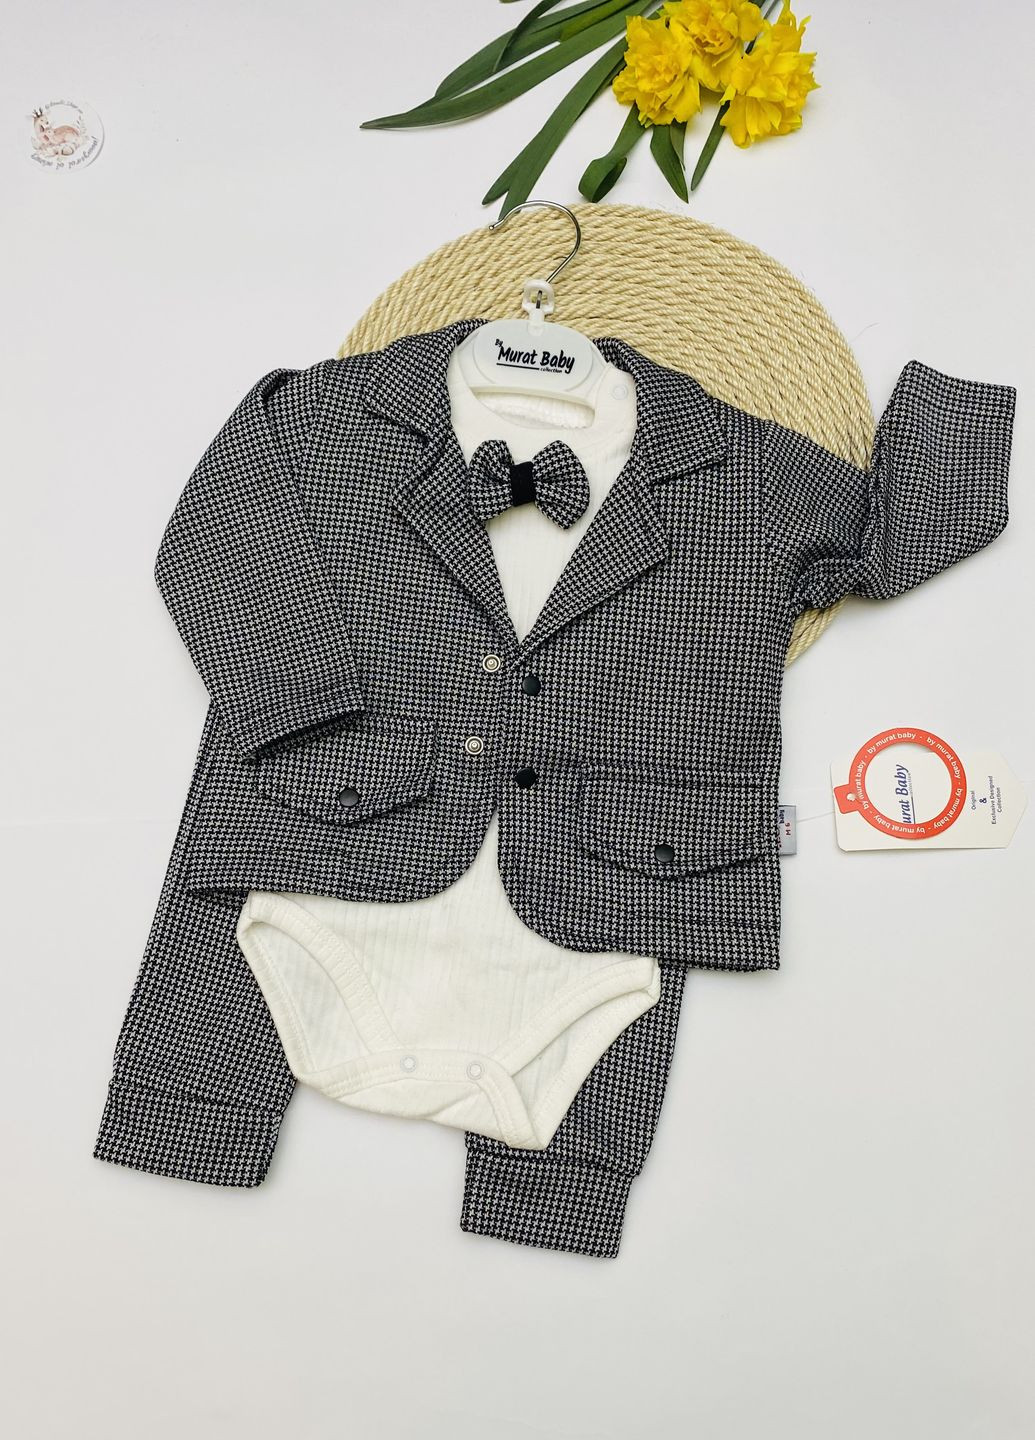 Серый демисезонный праздничный костюм для мальчика (пиджак+боди+штаны) тройка Murat baby